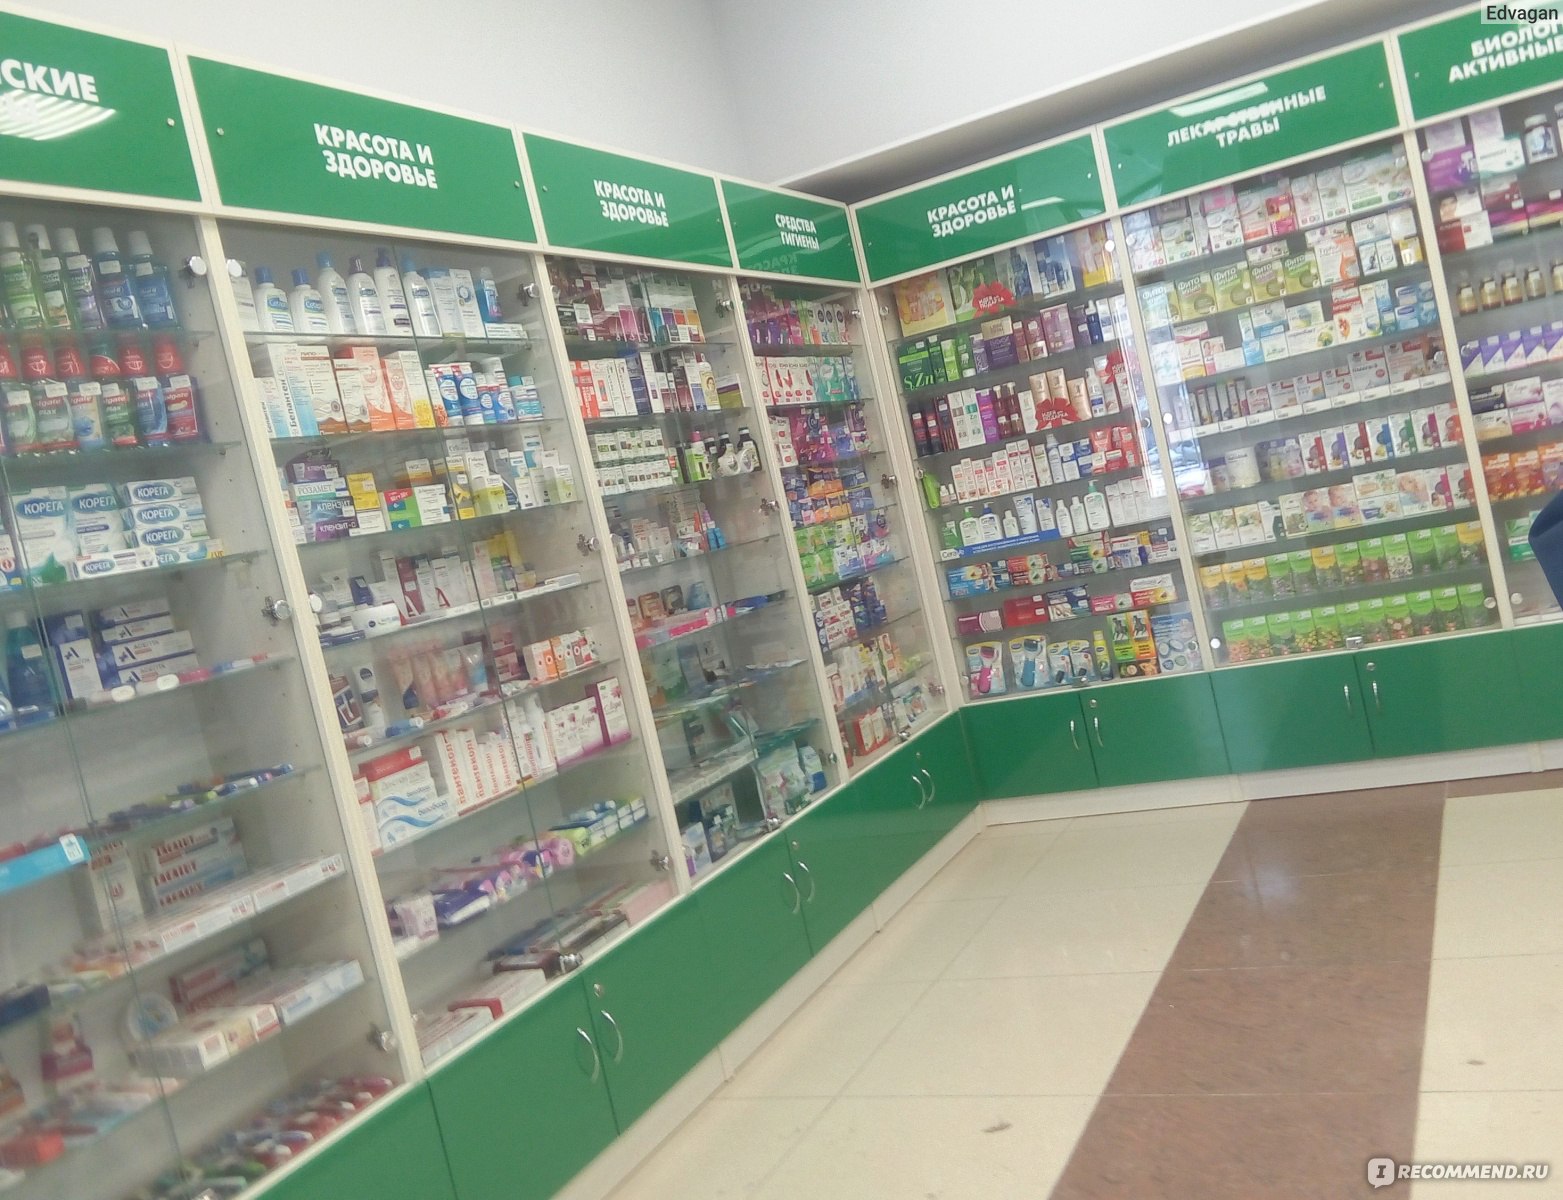 Аптеки Столички В Спб Интернет Заказ Лекарств